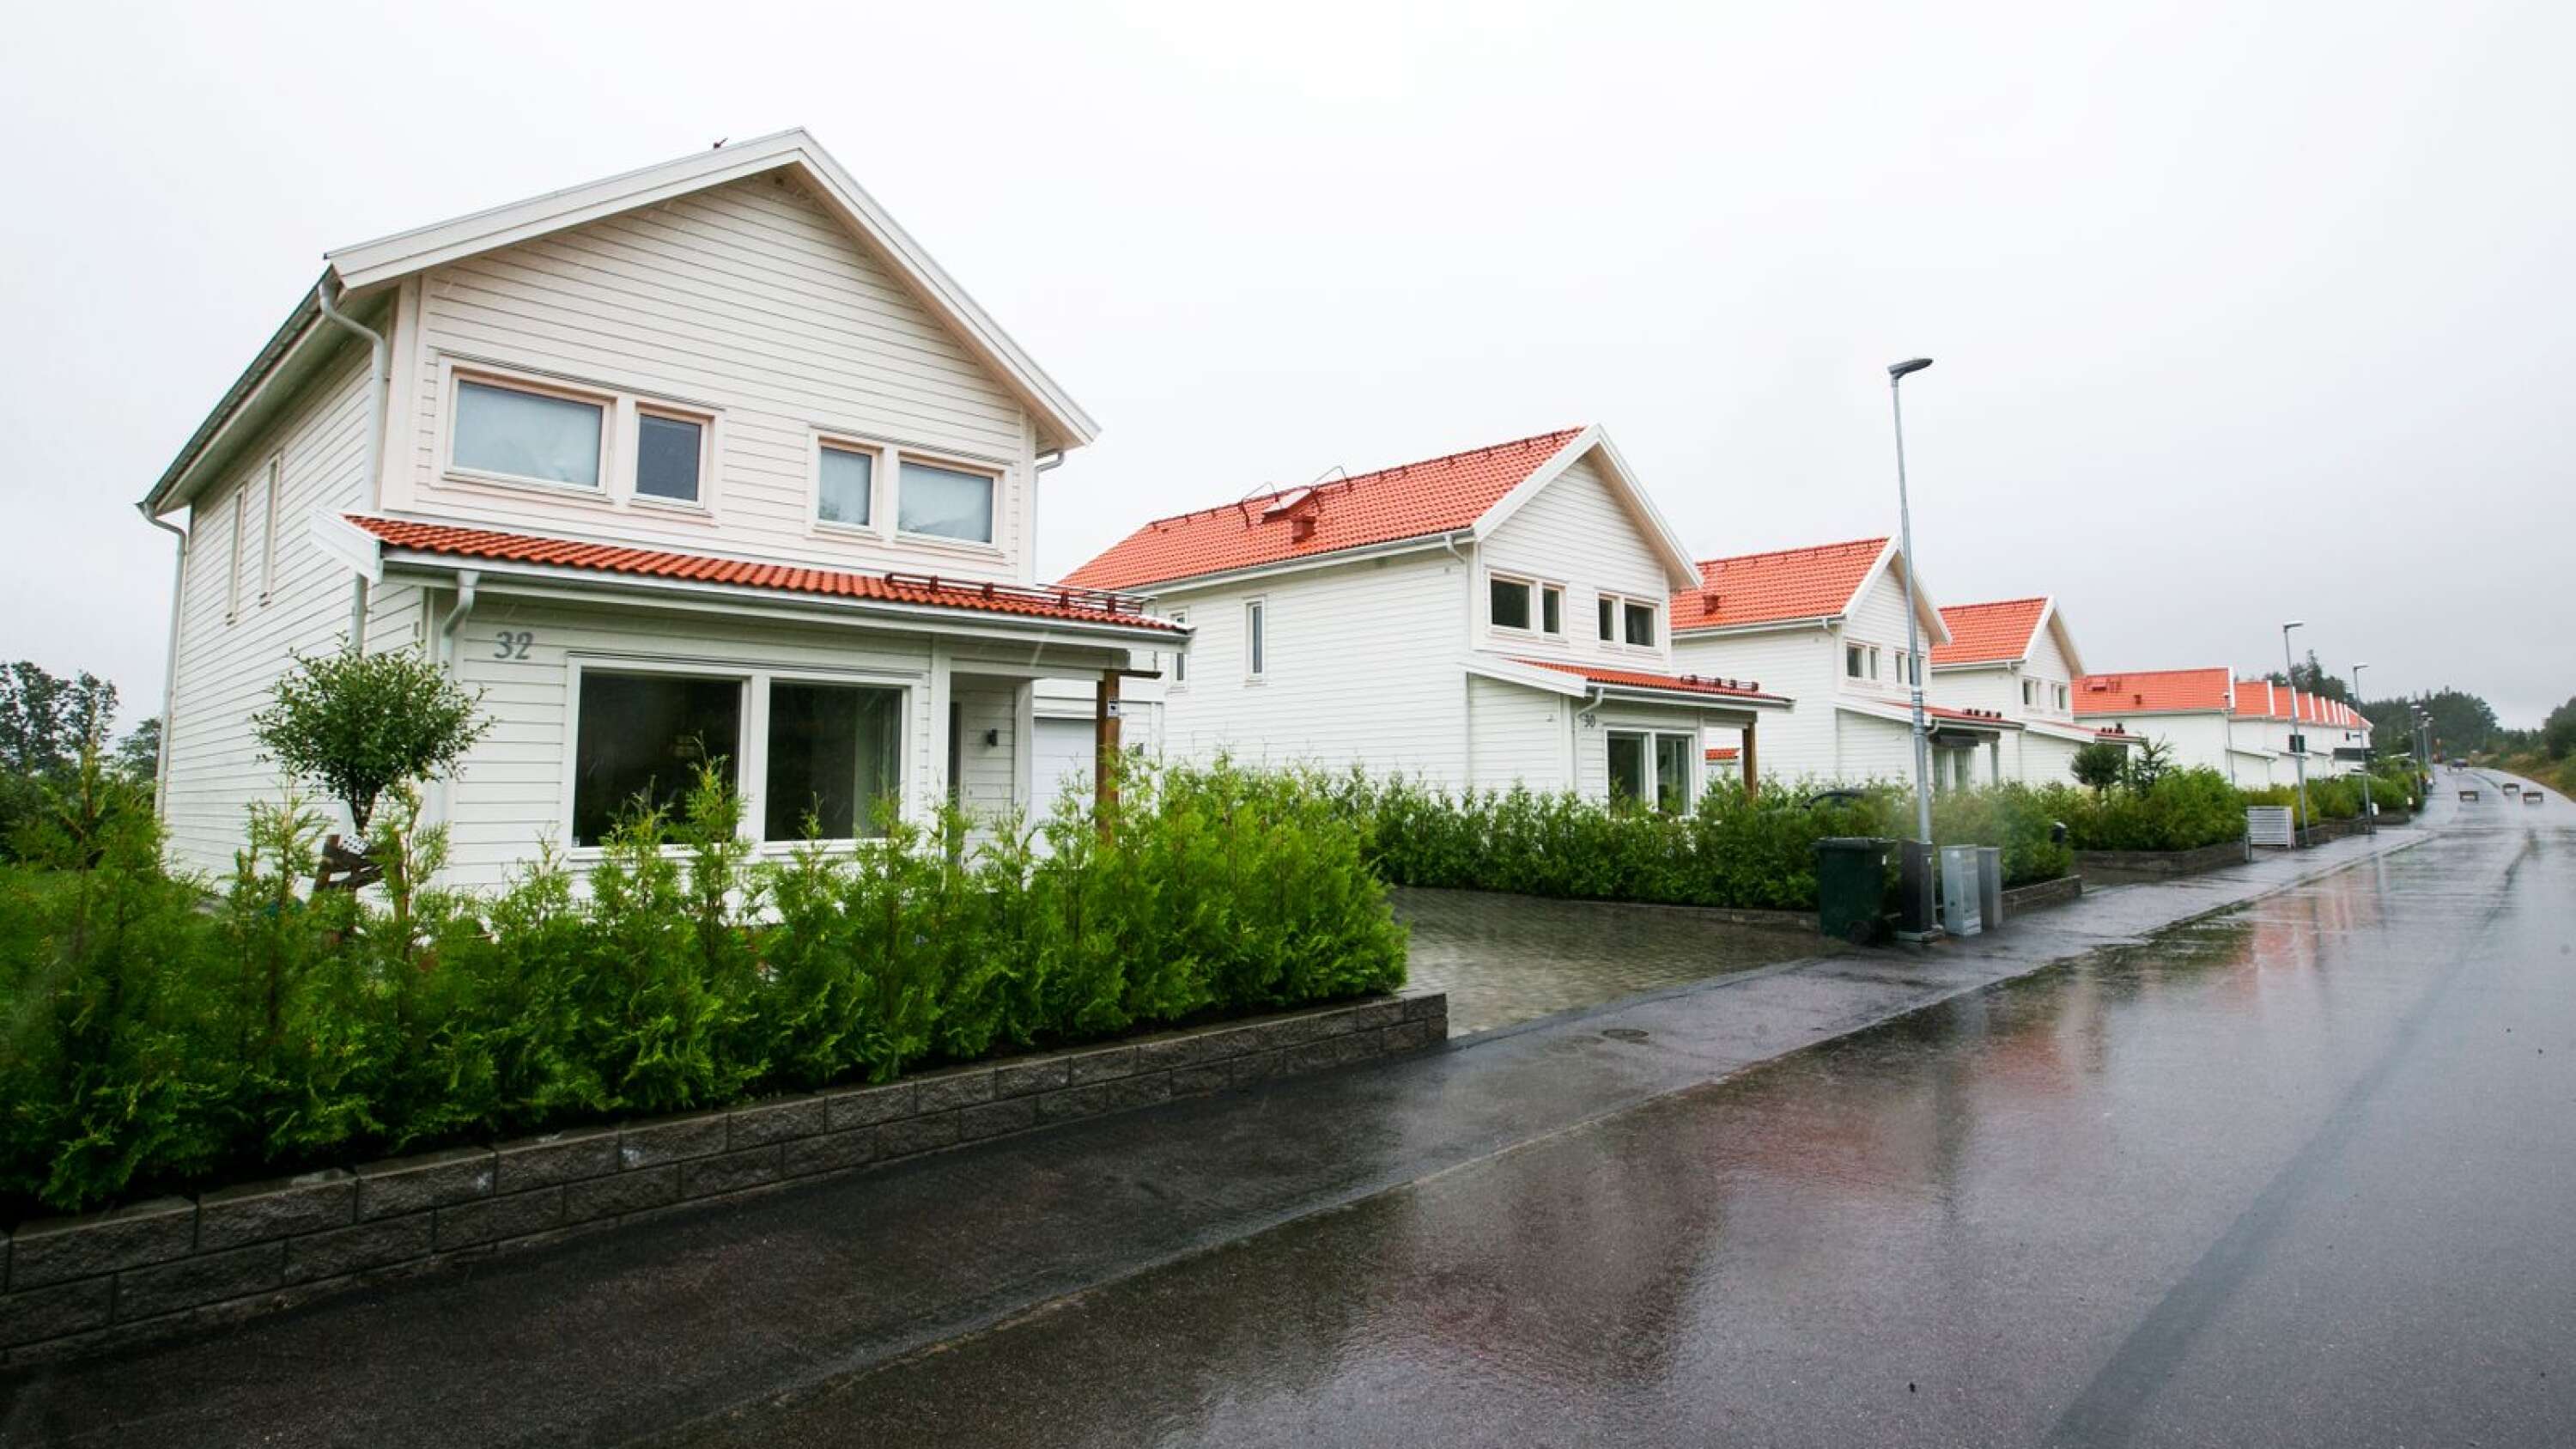 Nyare hus på området Kartberget i Karlstad.